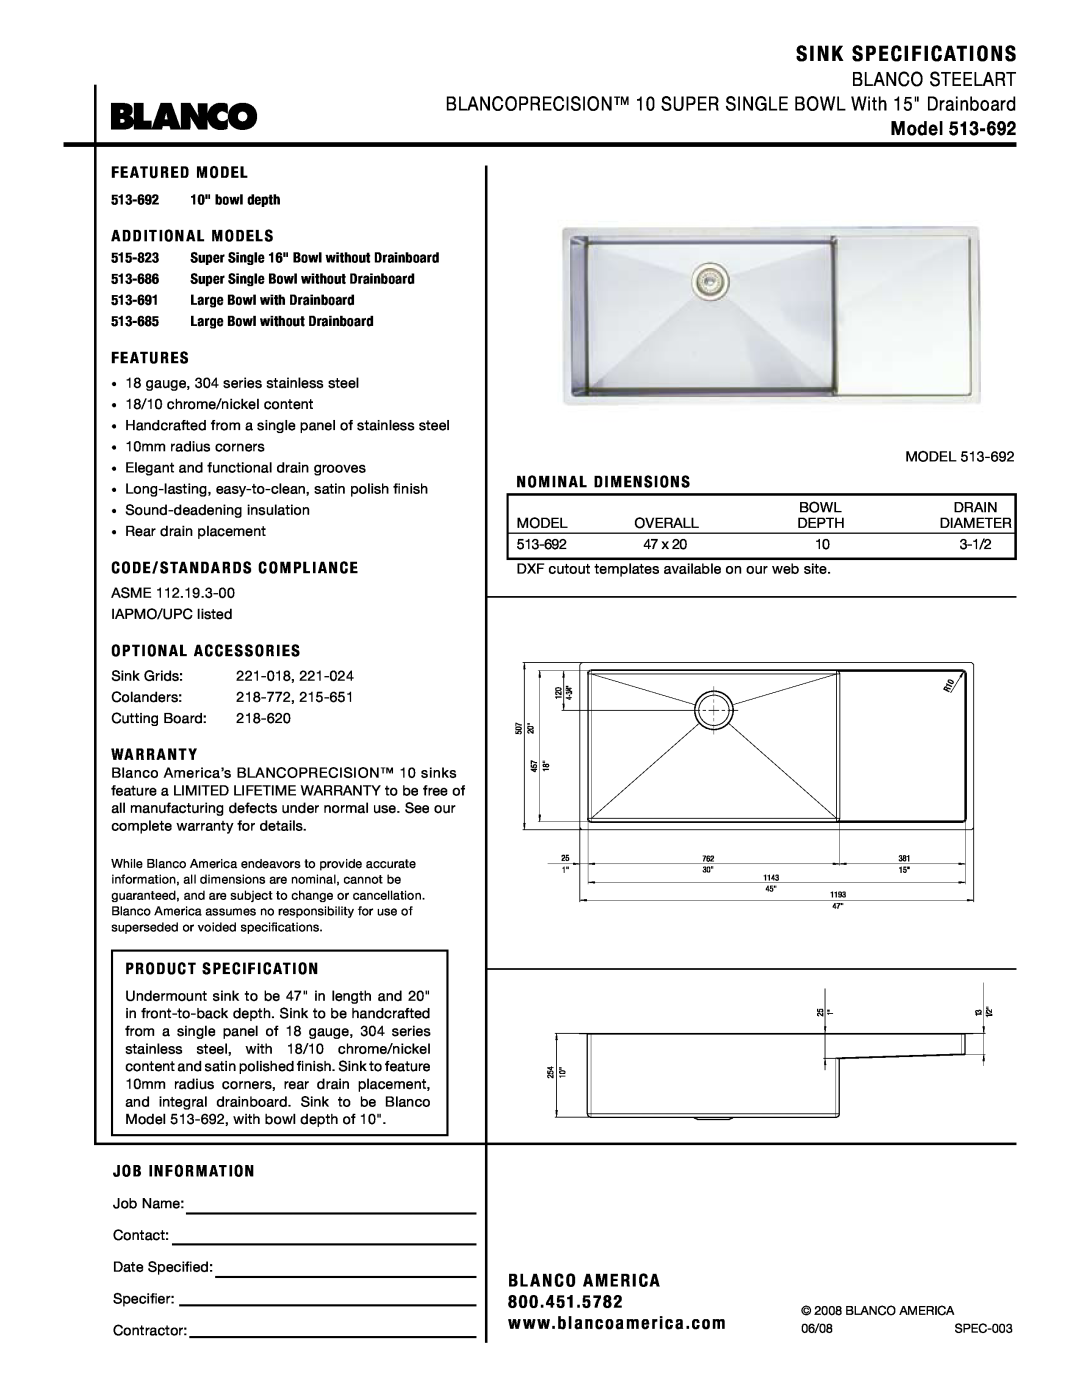 Blanco 513-692 warranty Sink Specifications, Blanco Steelart, Model, Bl Anco America 